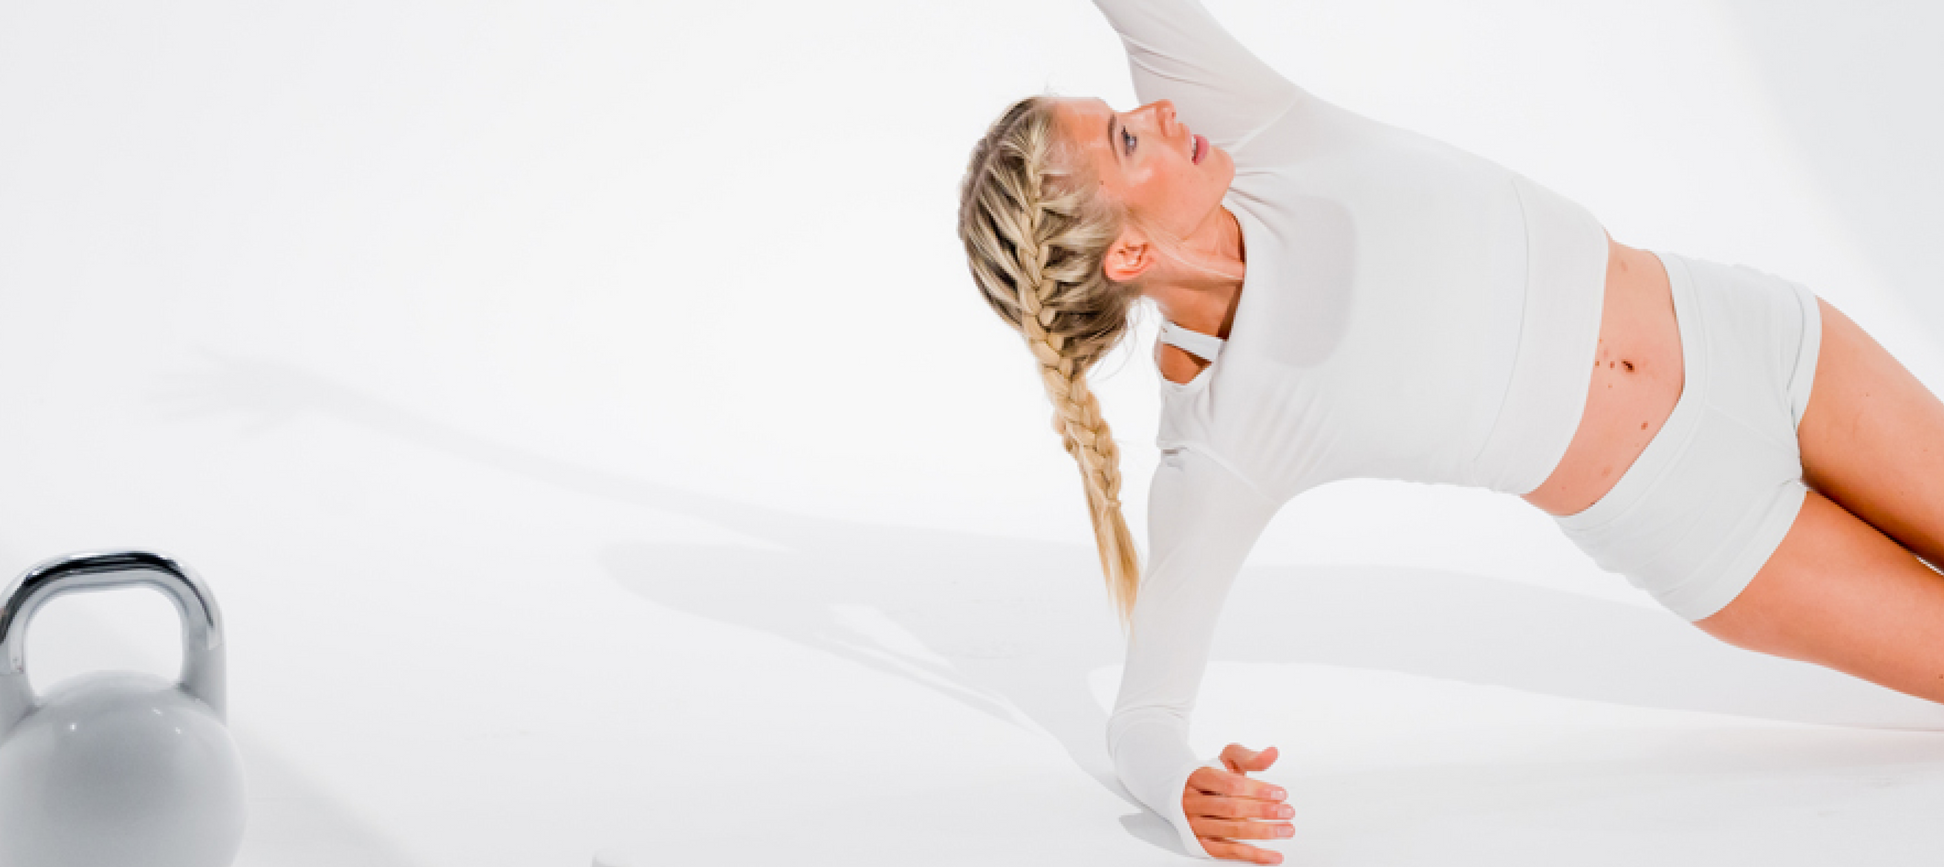 Mujer vestida de blanco realizando una pose de yoga